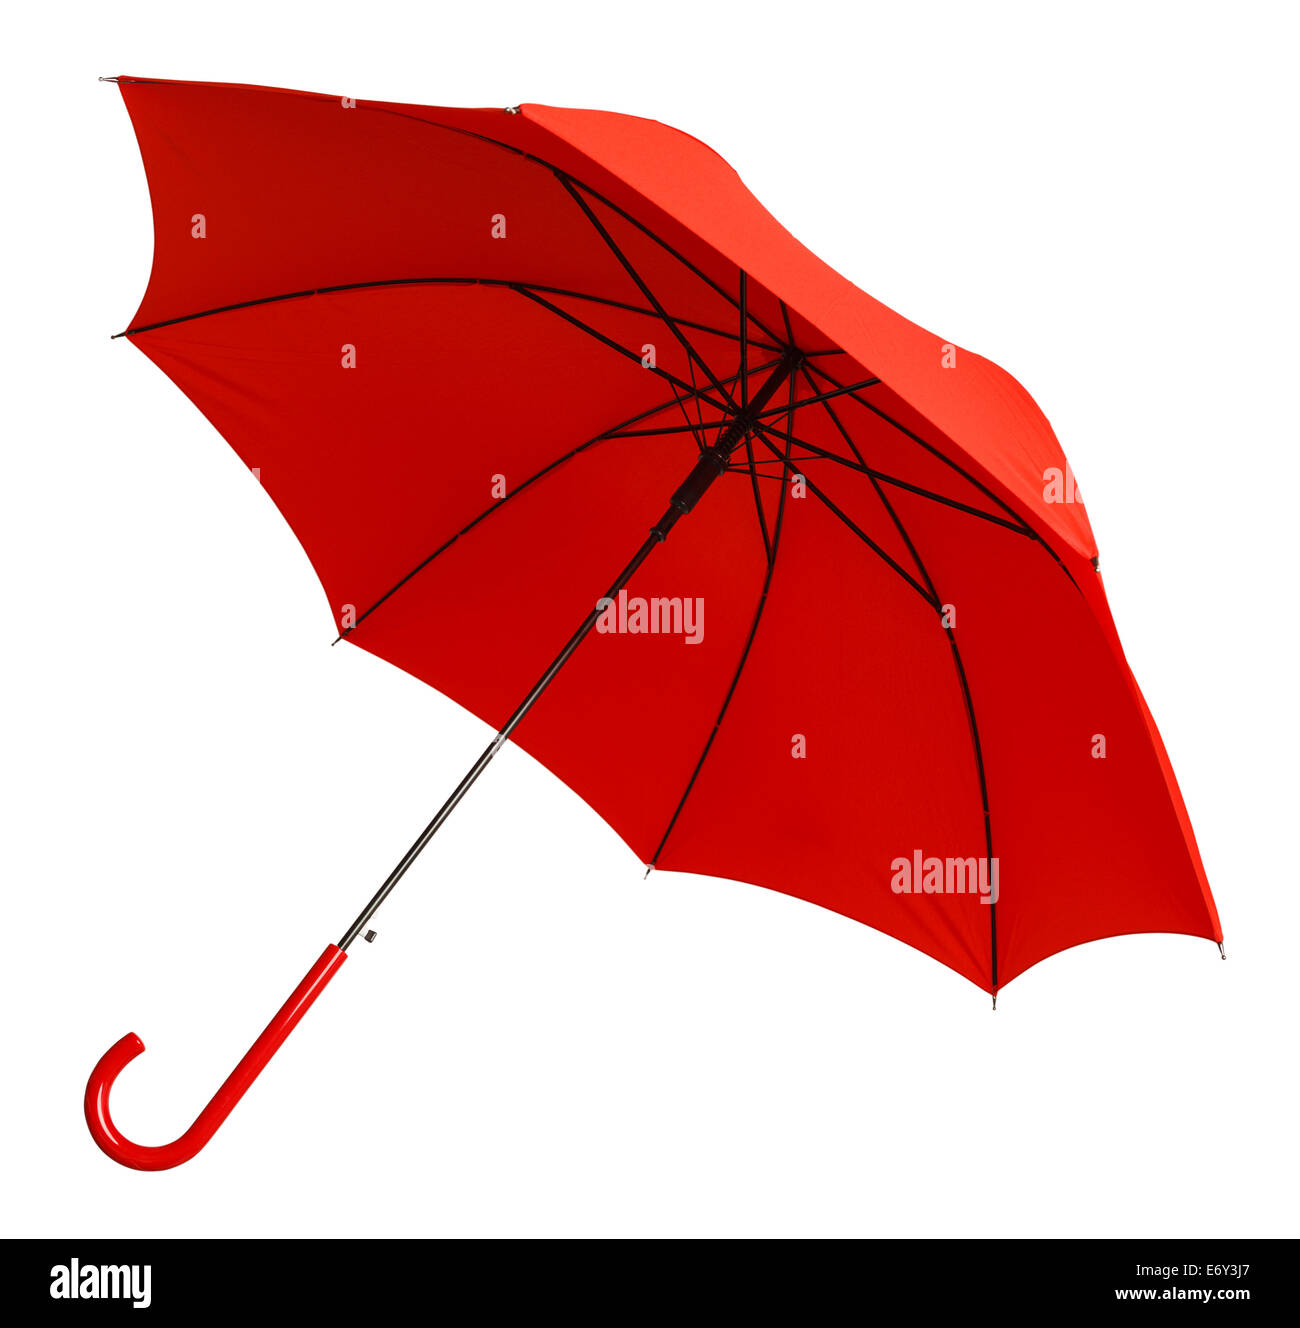 Ombrella immagini e fotografie stock ad alta risoluzione - Alamy